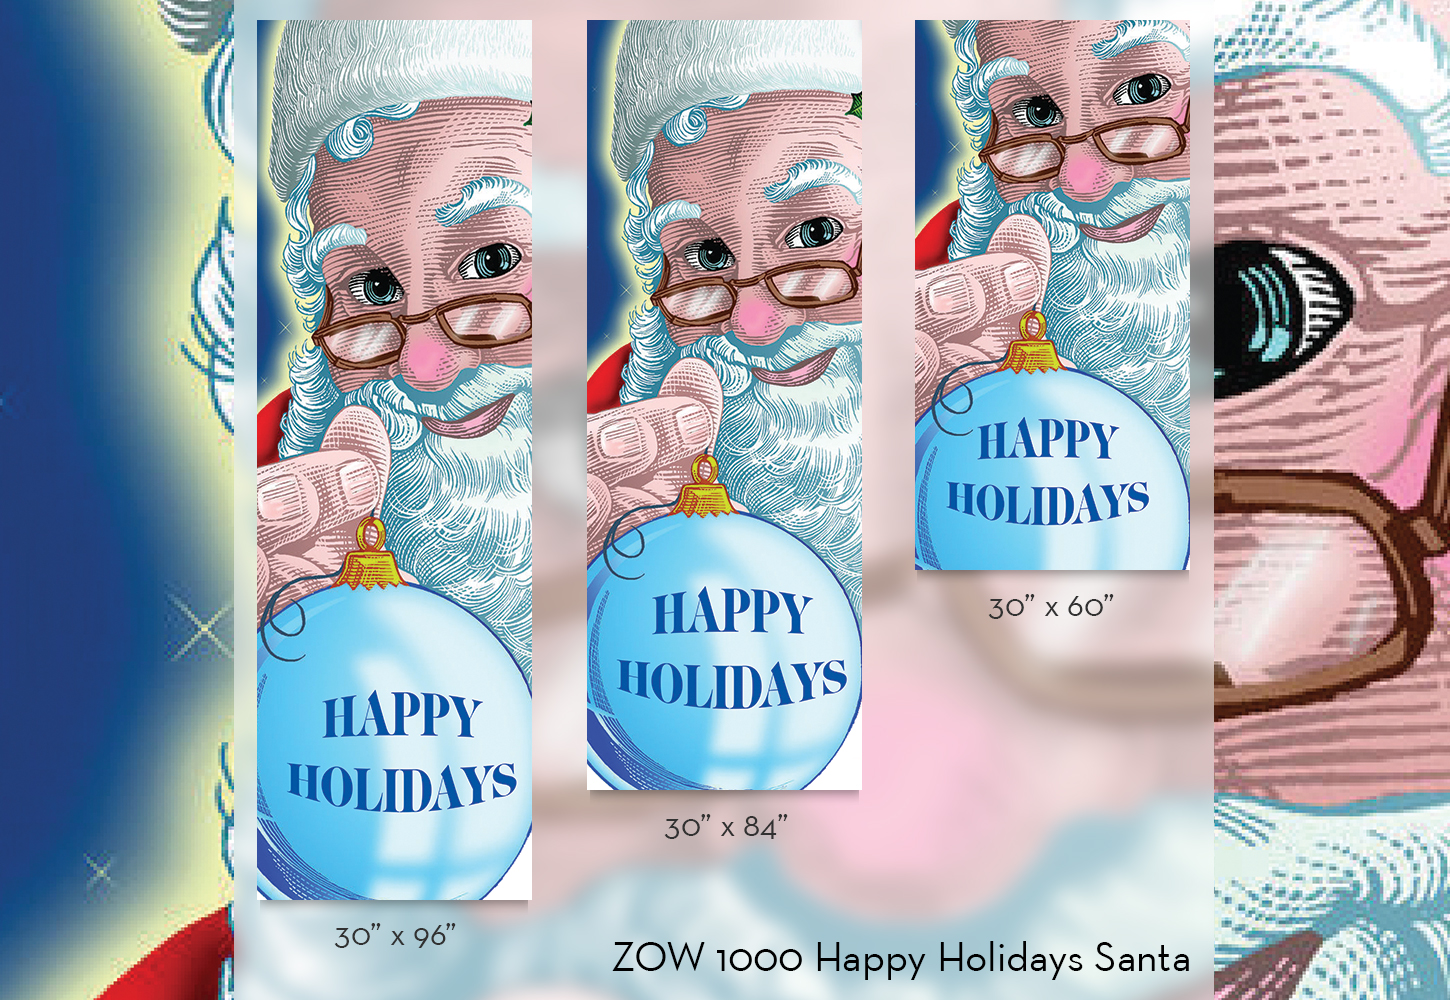 ZOW 1000 Happy Holidays Santa